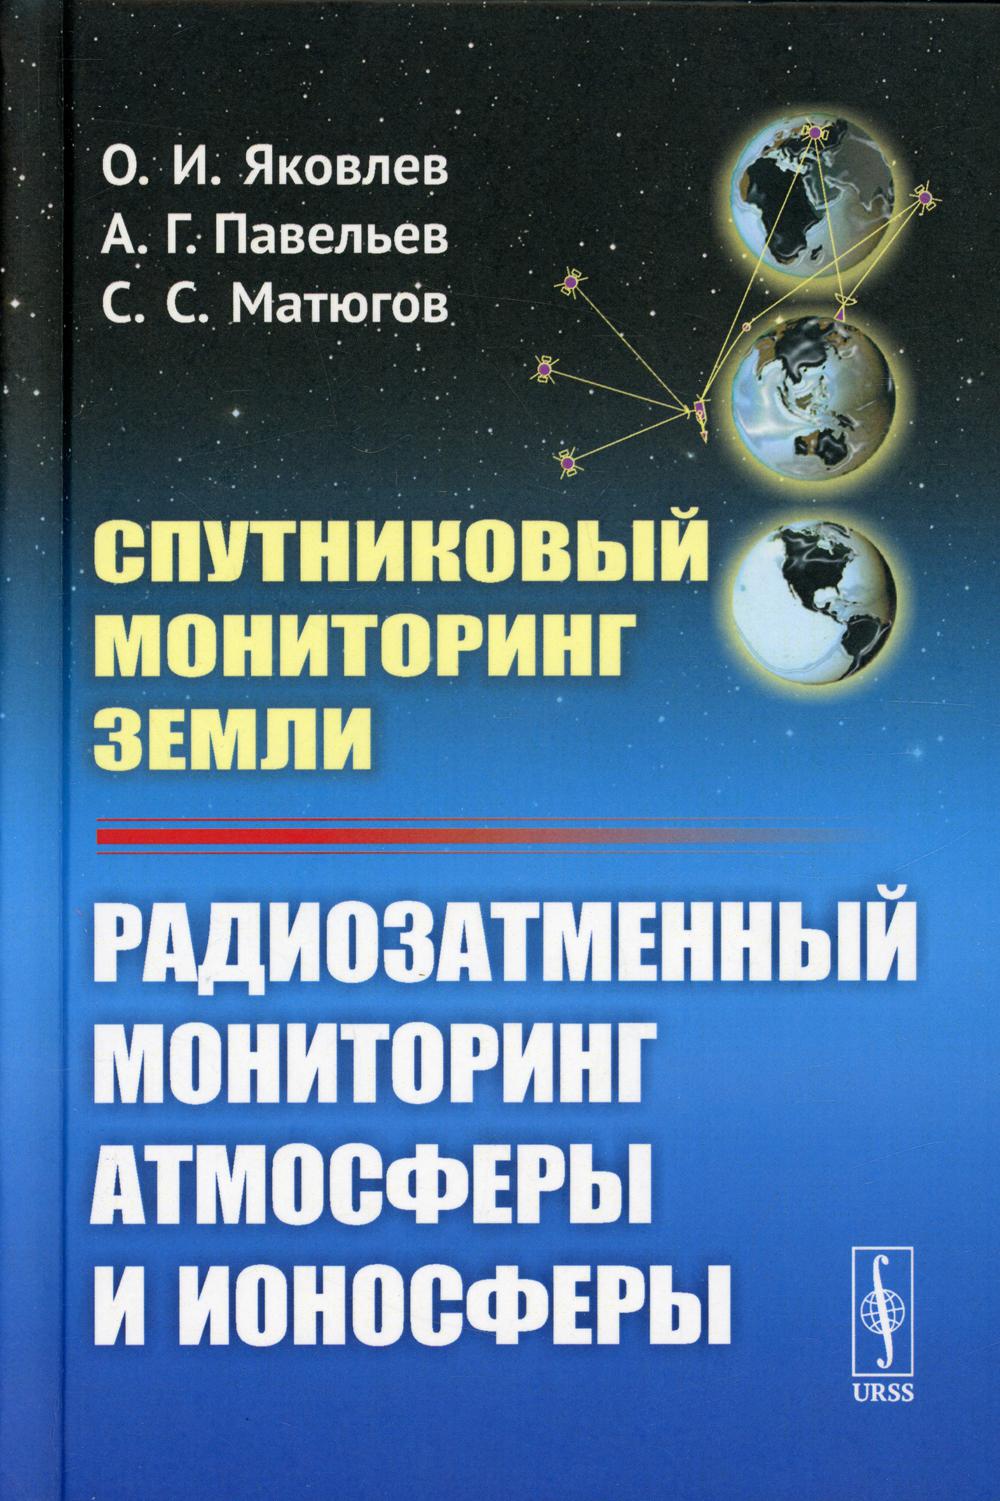 фото Книга спутниковый мониторинг земли: радиозатменный мониторинг атмосферы и ионосферы и... ленанд